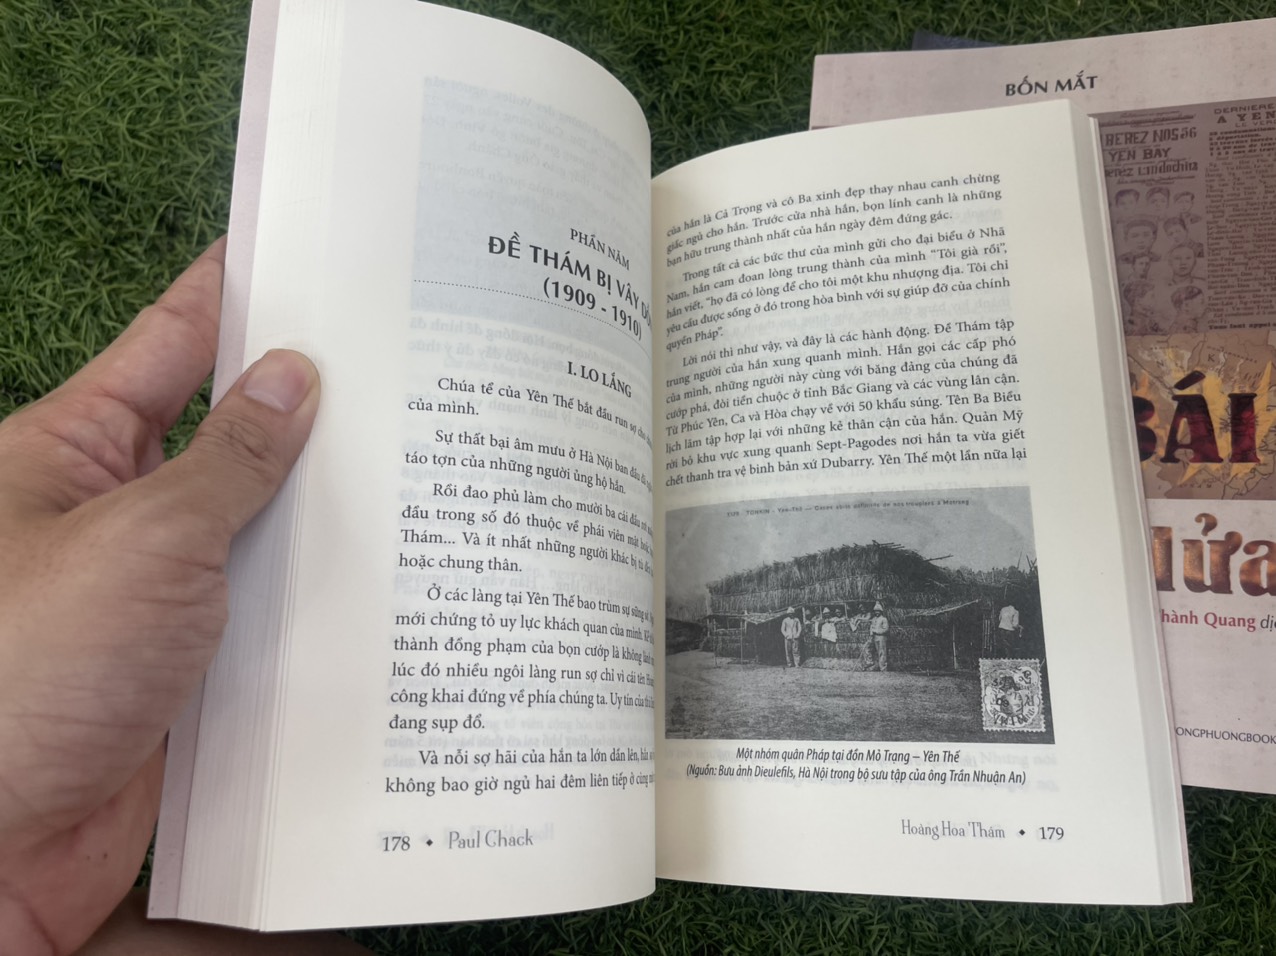 HOÀNG HOA THÁM – Paul Chack – Trường Phương book